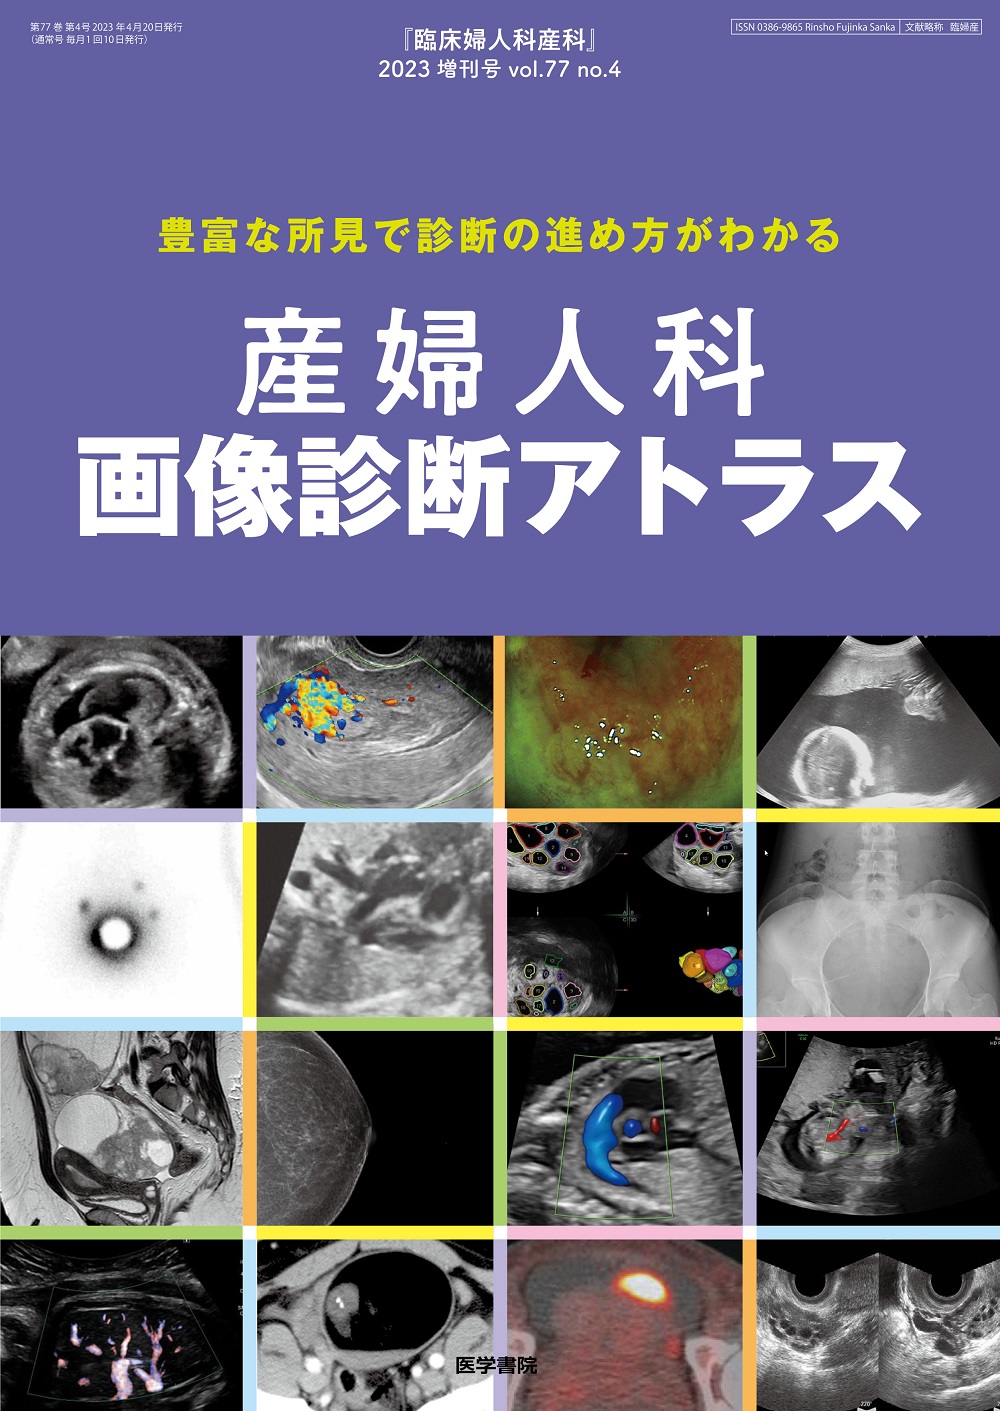 臨床婦人科産科 Vol.77 No.4【電子版】 | 医書.jp